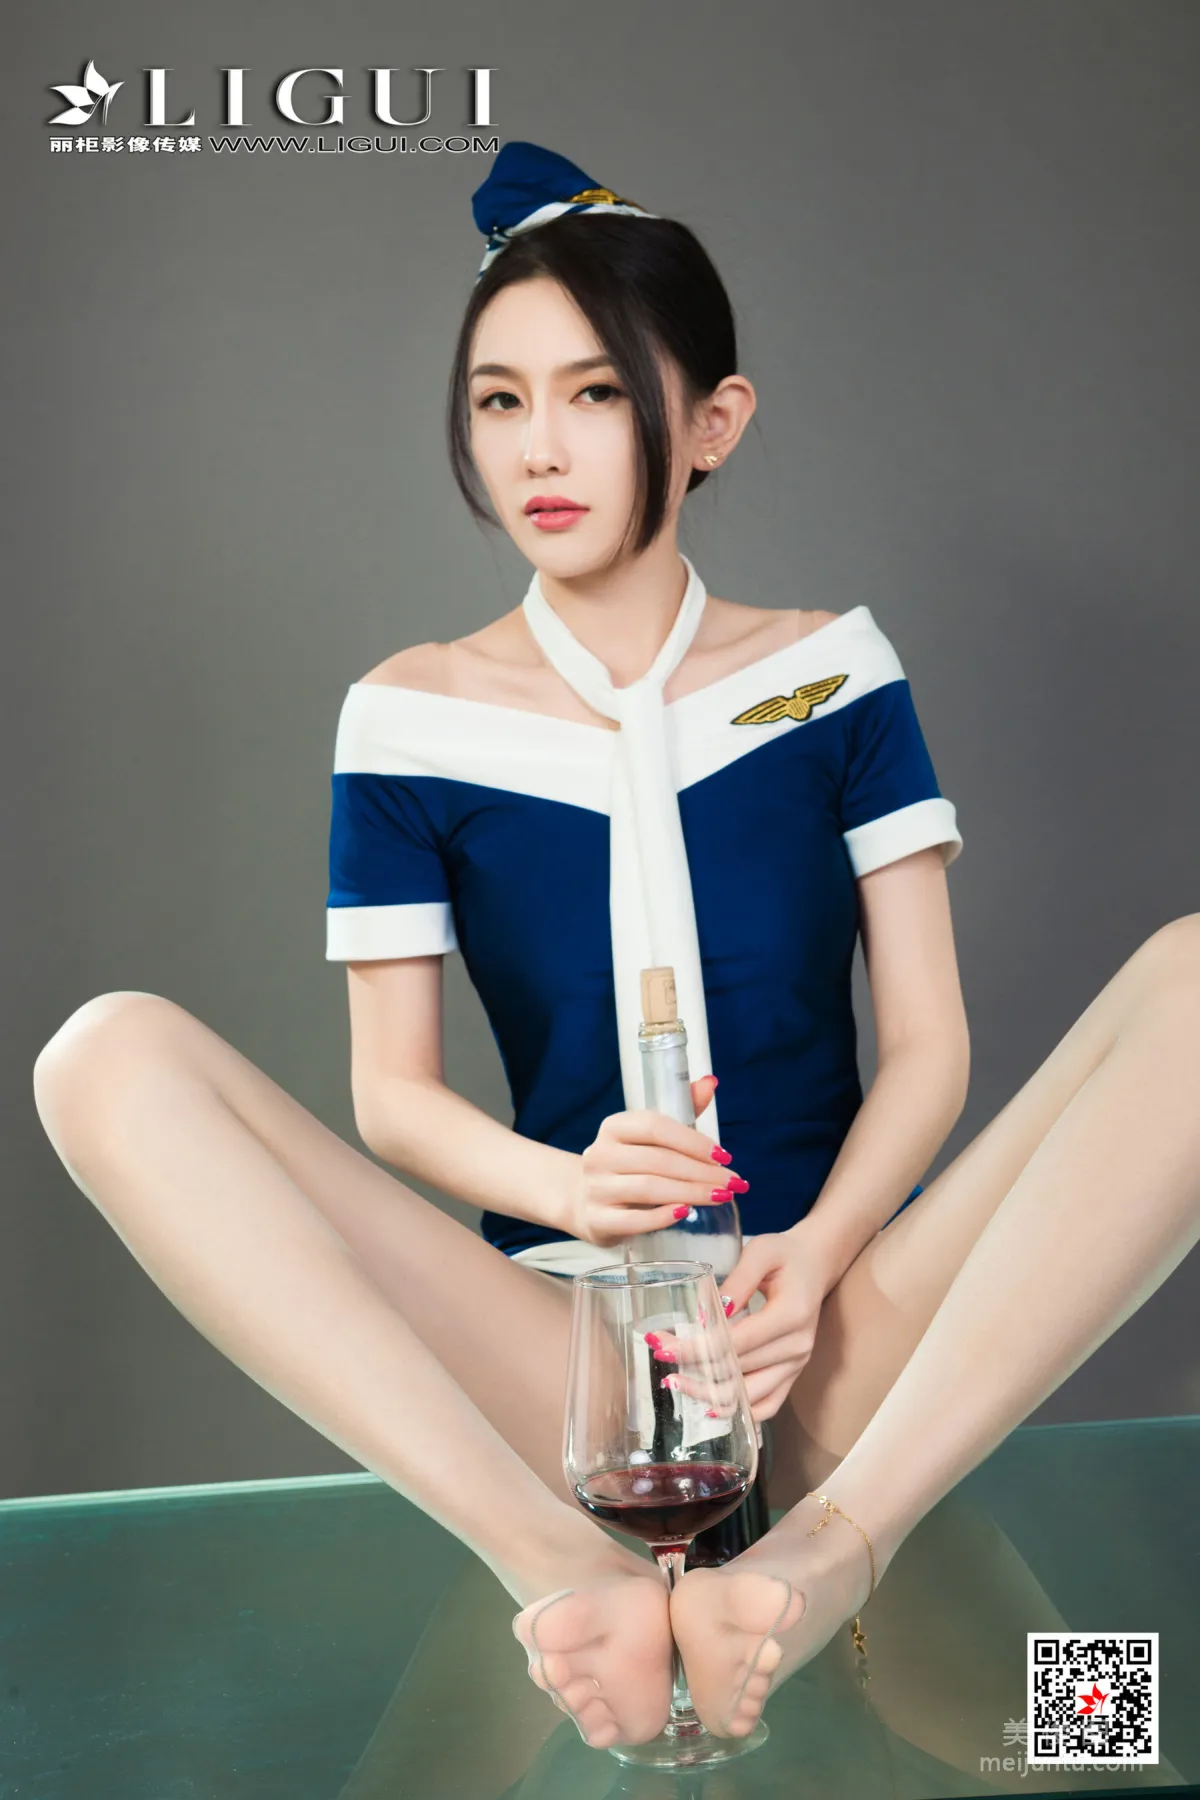 [丽柜Ligui] Model 甜甜 《醉酒香莲》30